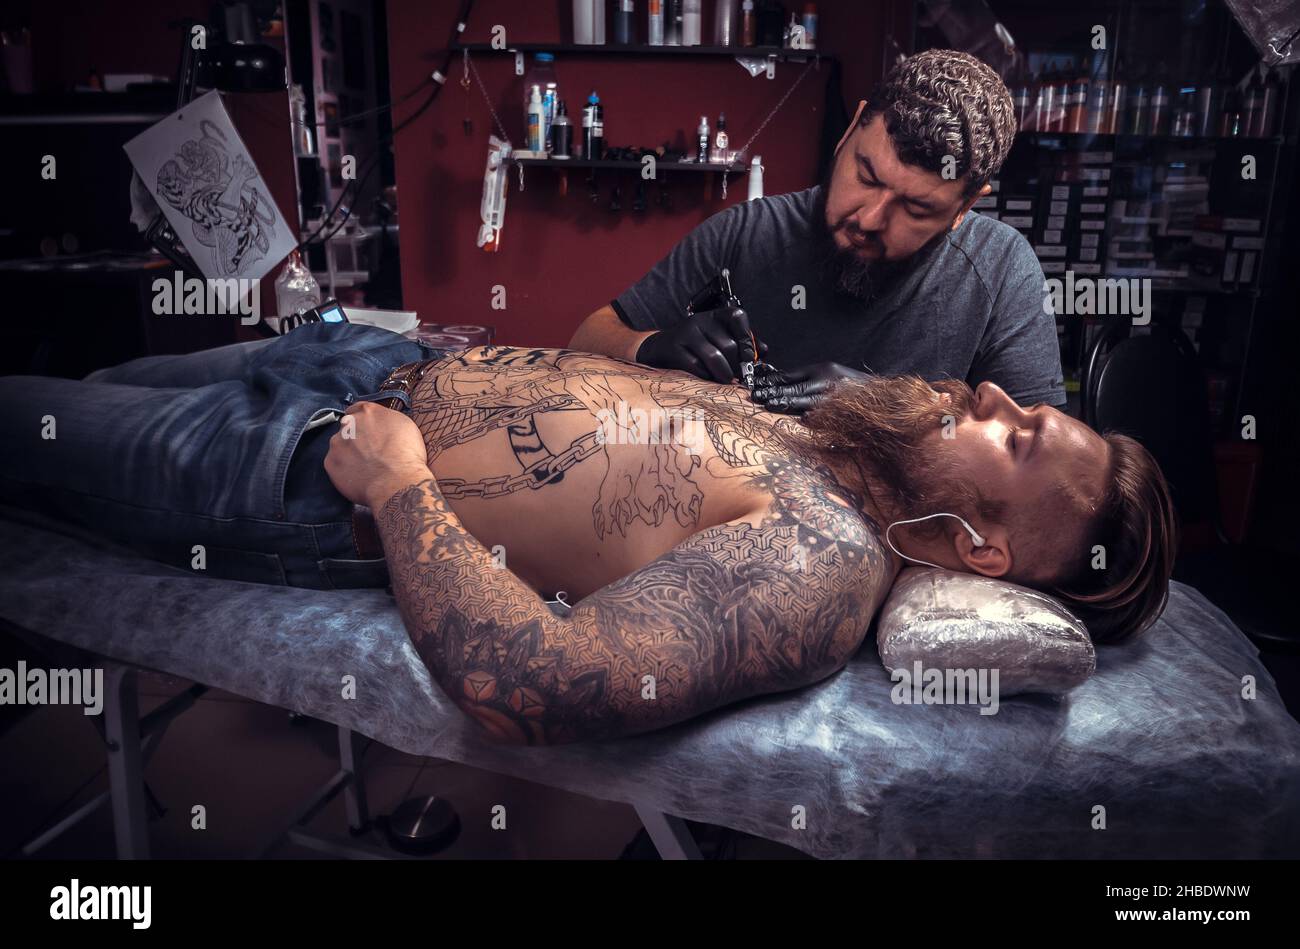 Maestro del arte del tatuaje durante un salón de sesiones de tatuaje Foto de stock